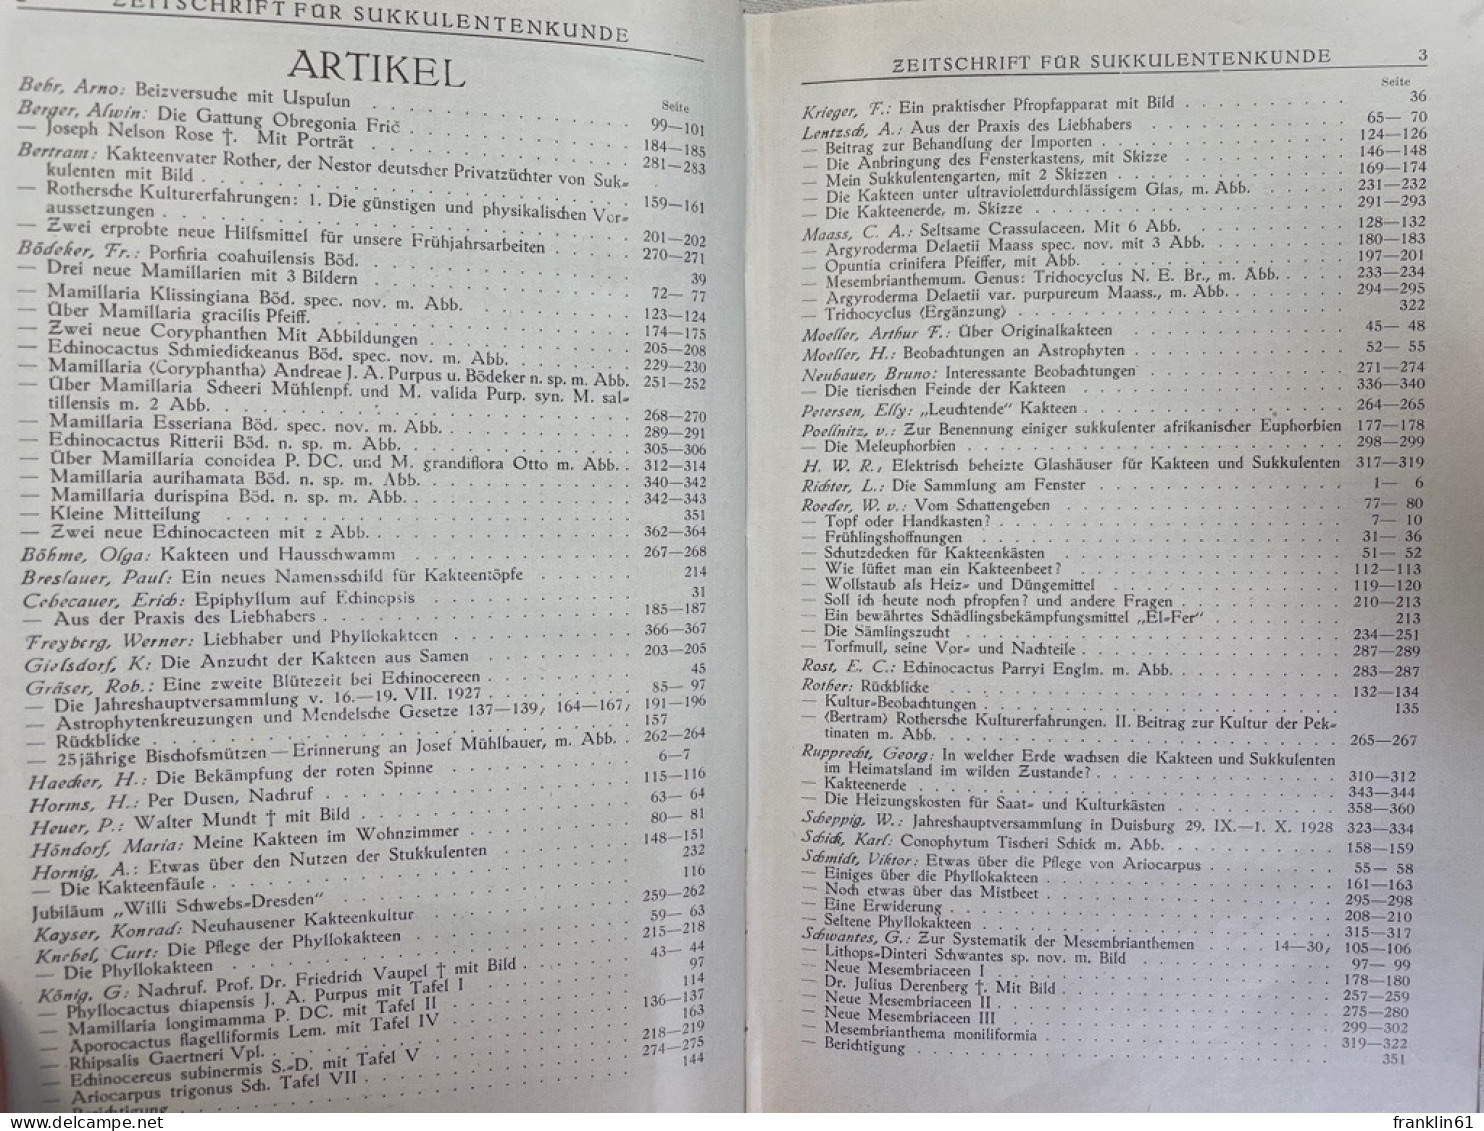 Zeitschrift Für Sukkulentenkunde. Band III. Hefte 1 - 16. 1927-1928. - Natuur